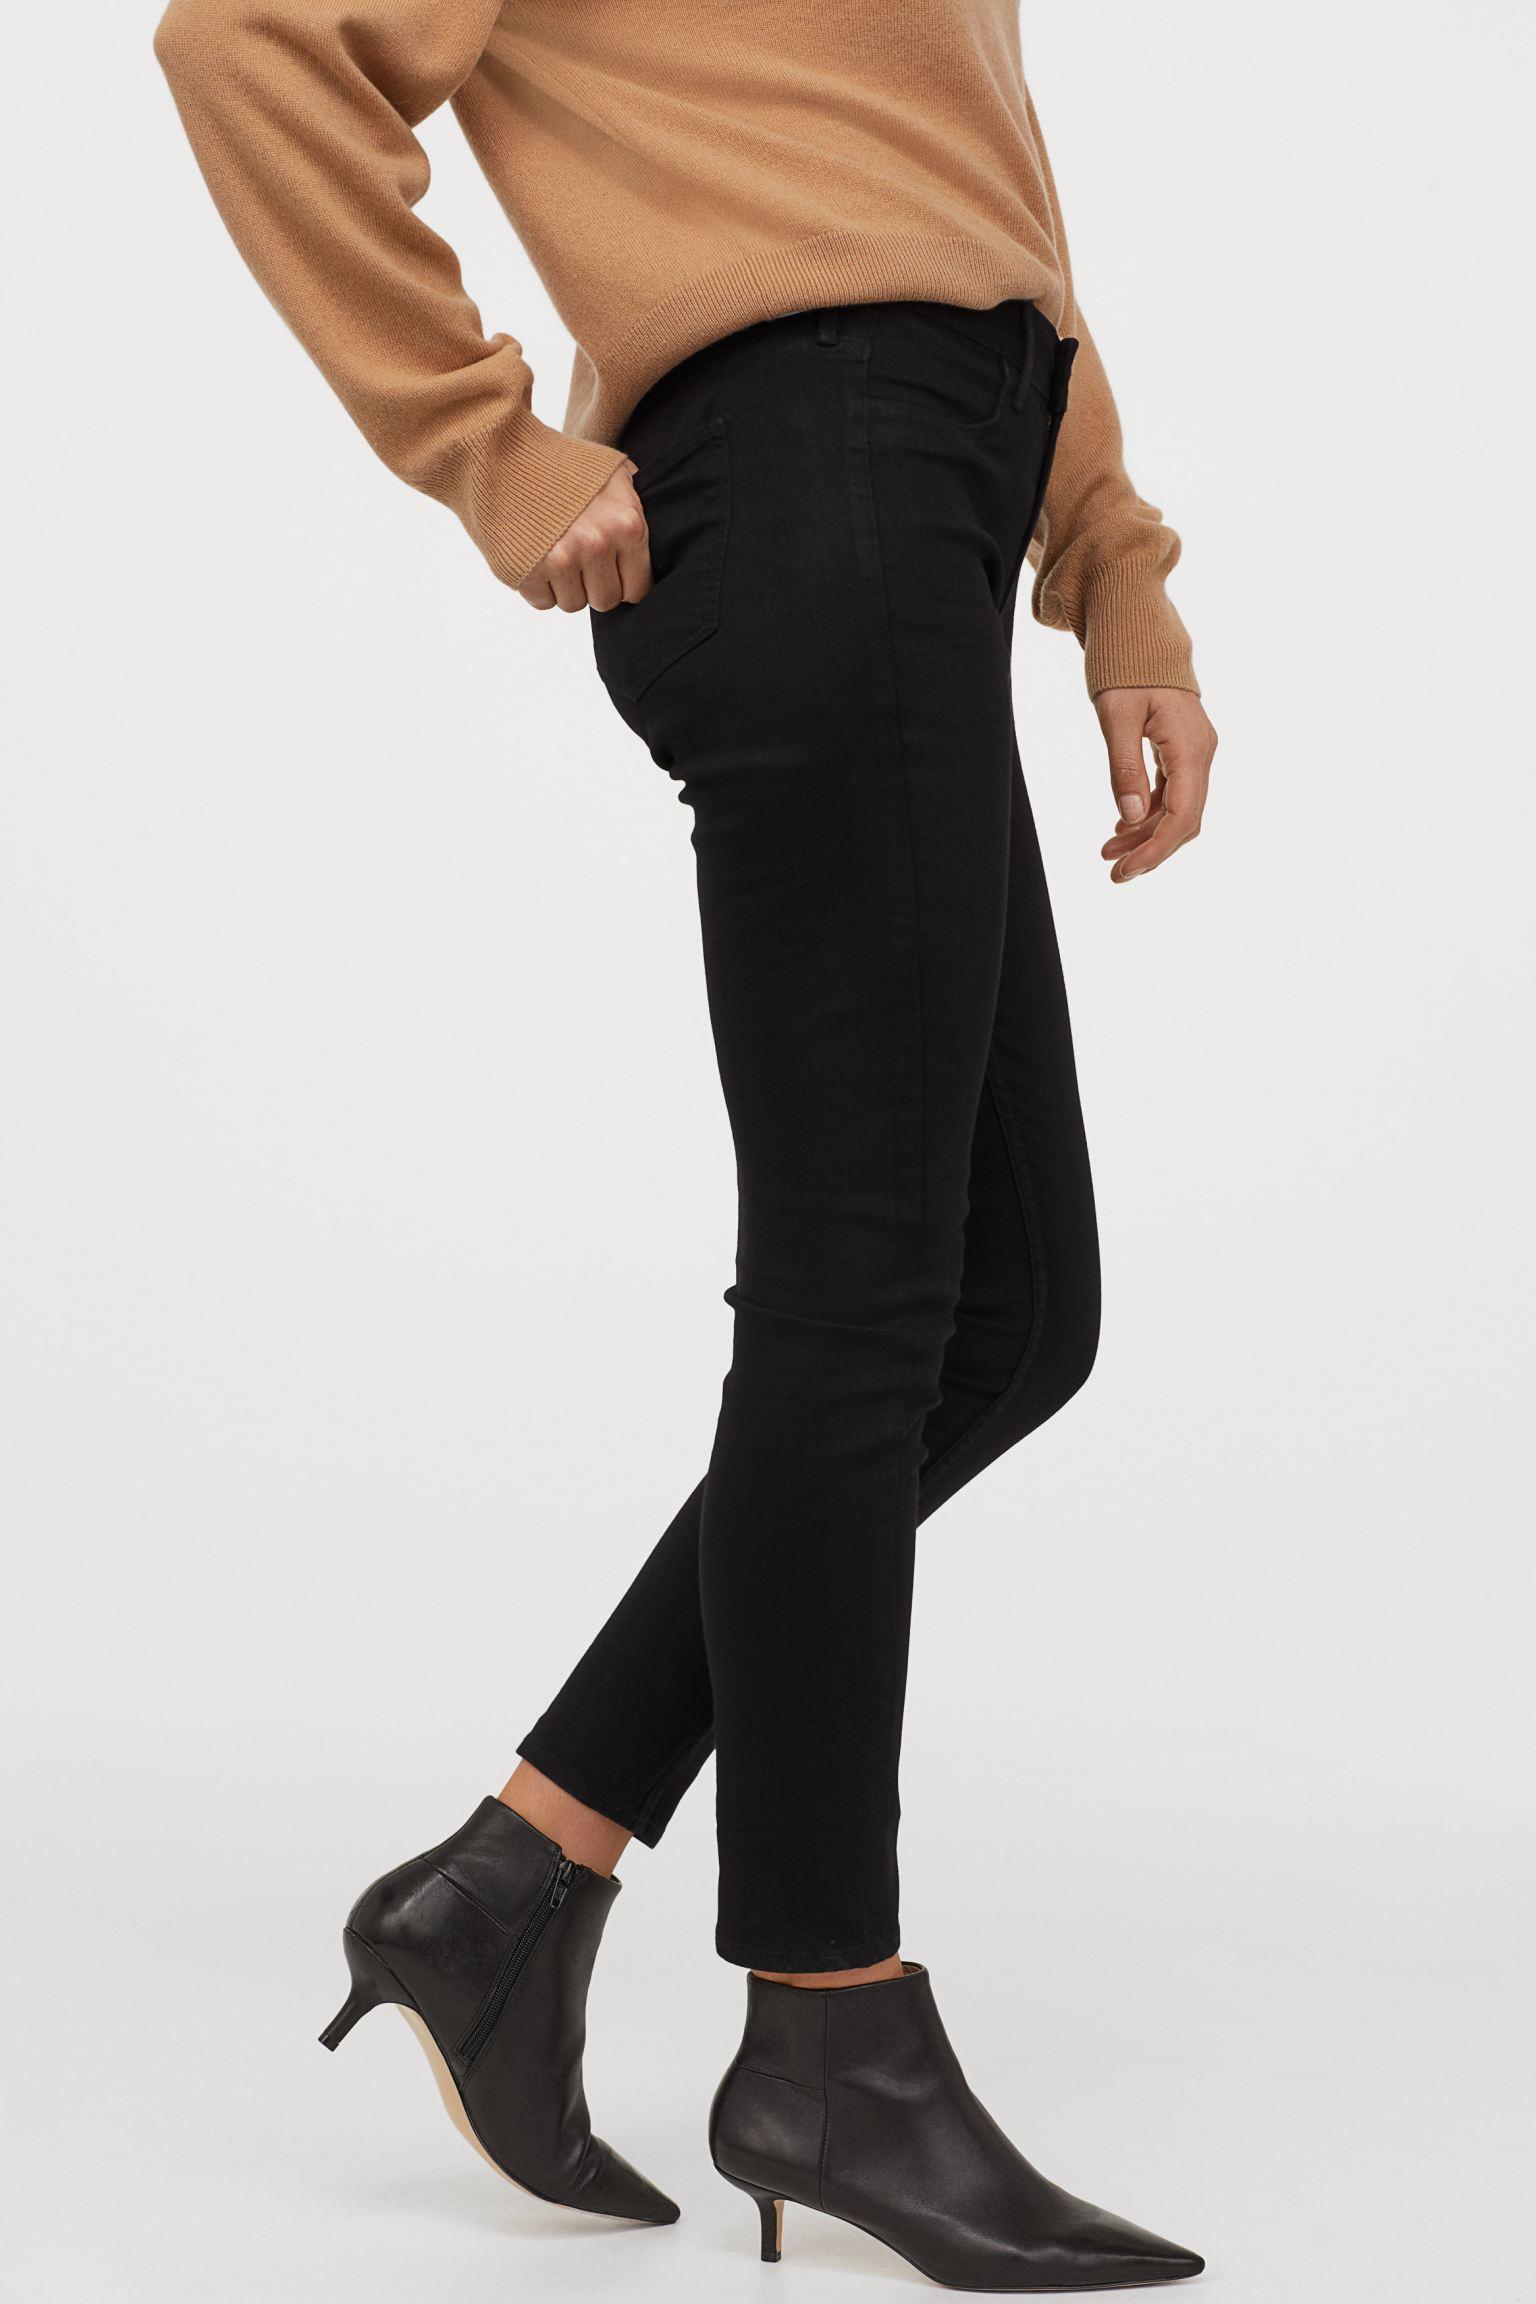 Отзыв на Узкие джинсы нормальные джинсы длиной по щиколотку из Интернет-Магазина H&M